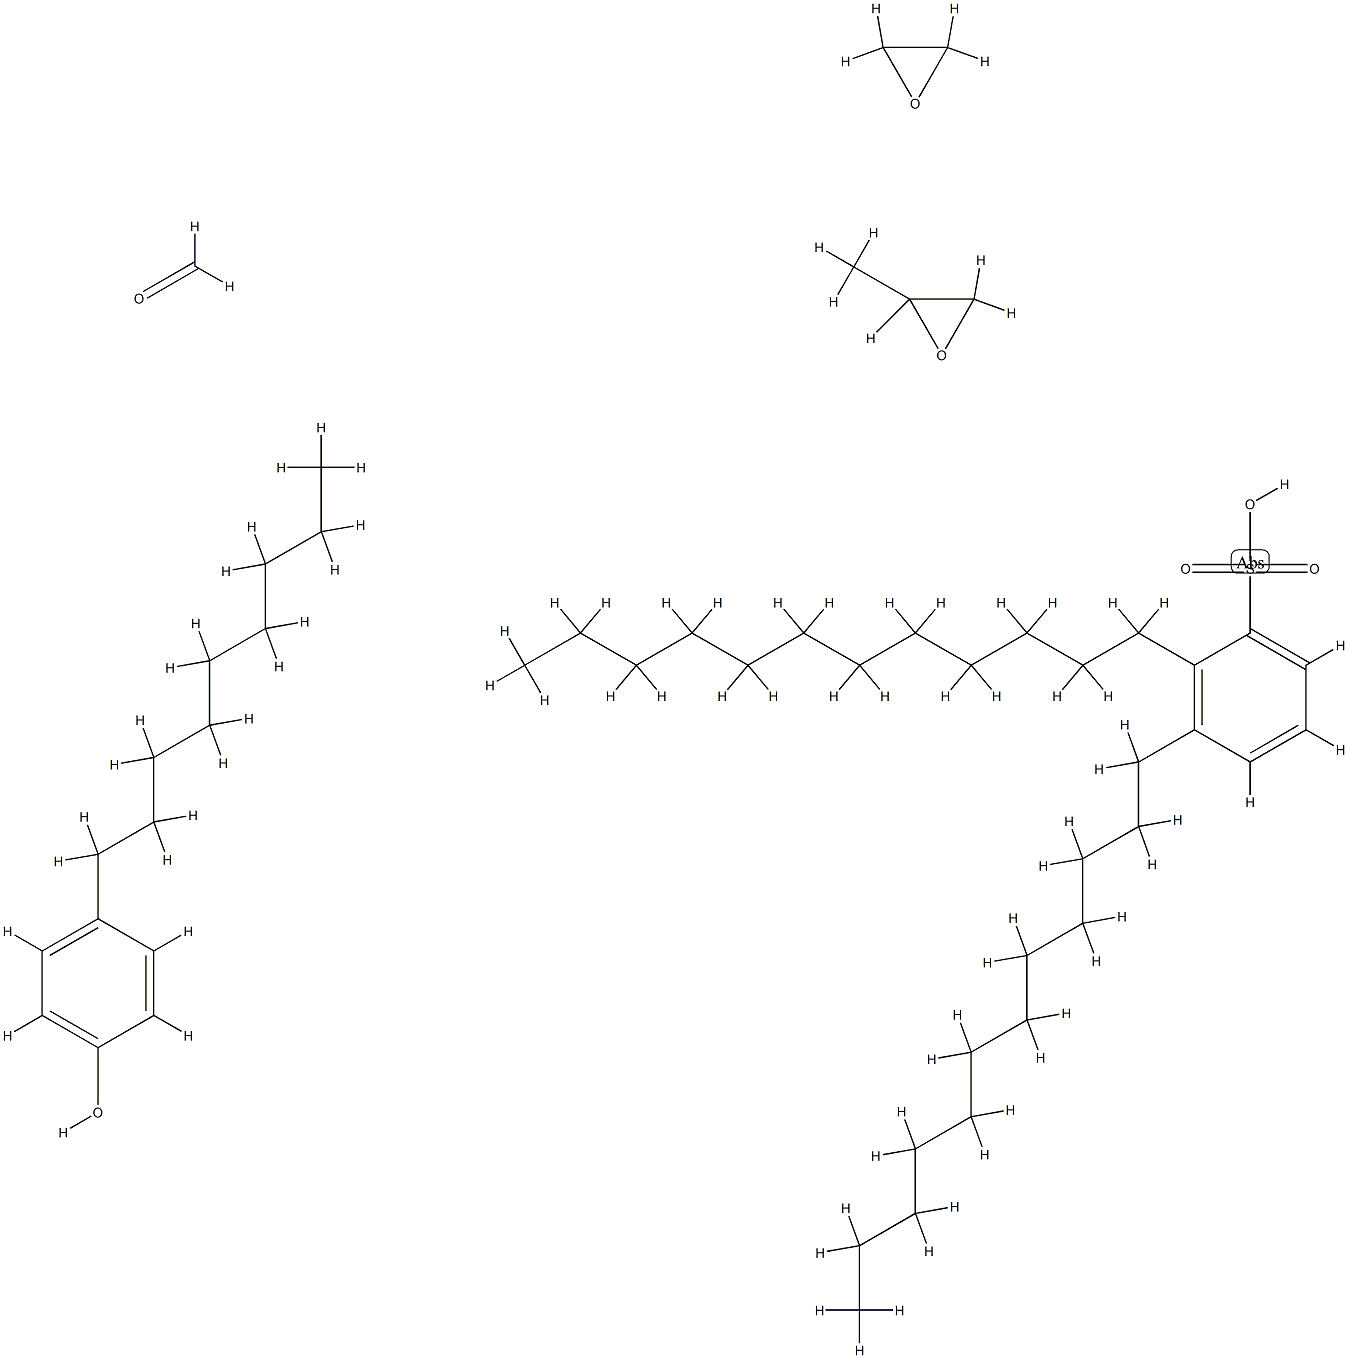 포름알데히드,메틸옥시란중합체,4-노닐페놀및옥시란,디도데실벤젠술포네이트